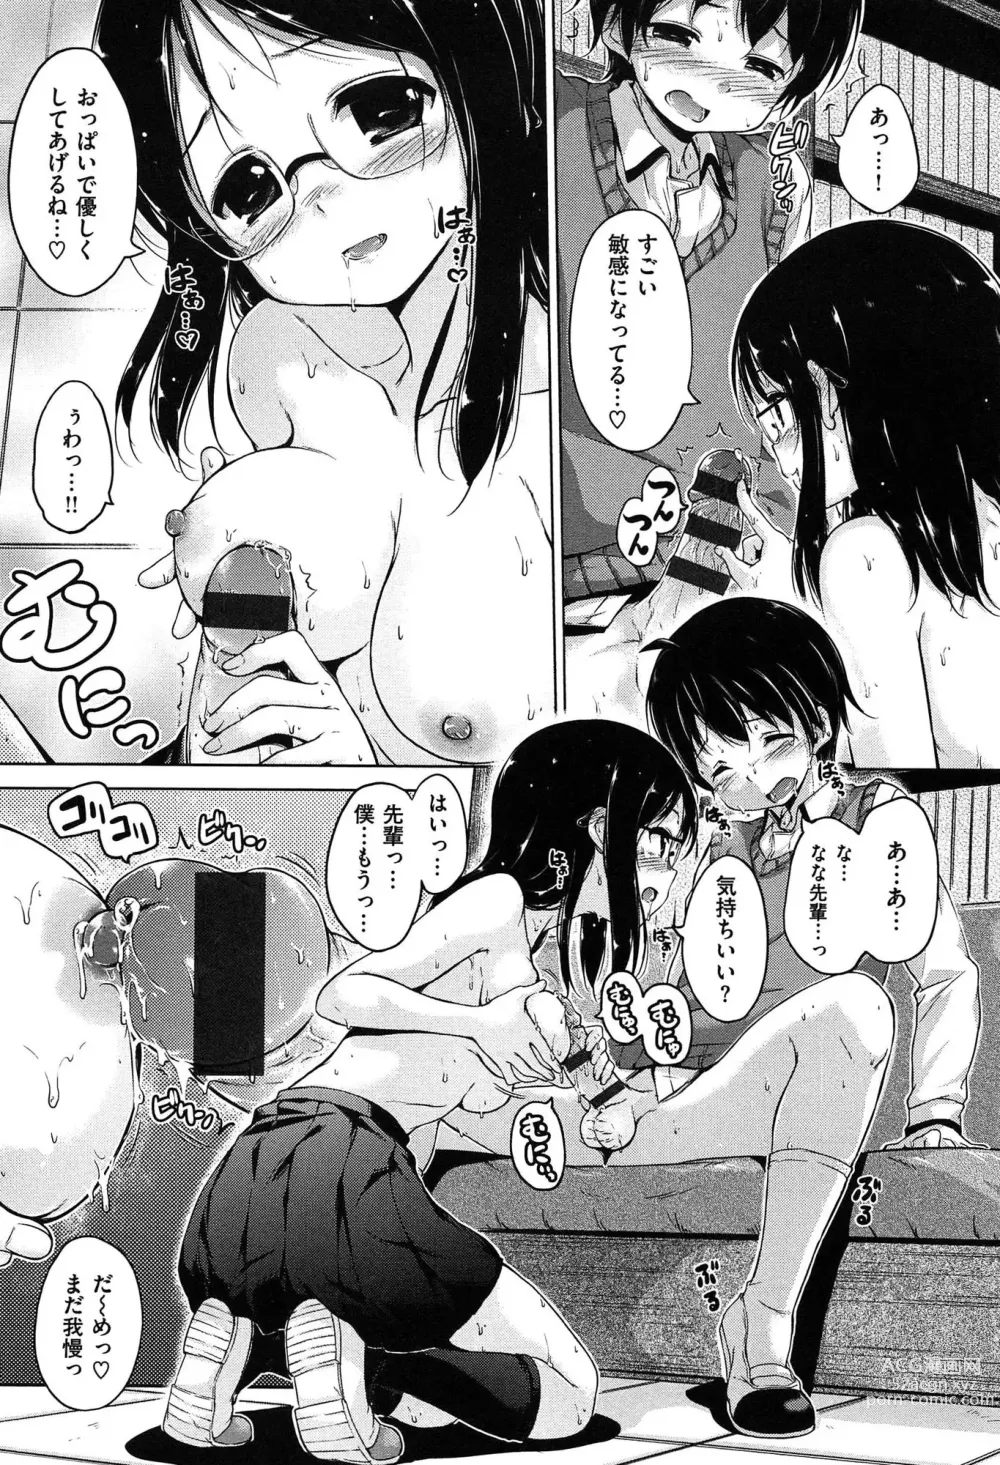 Page 203 of manga Kira Kira